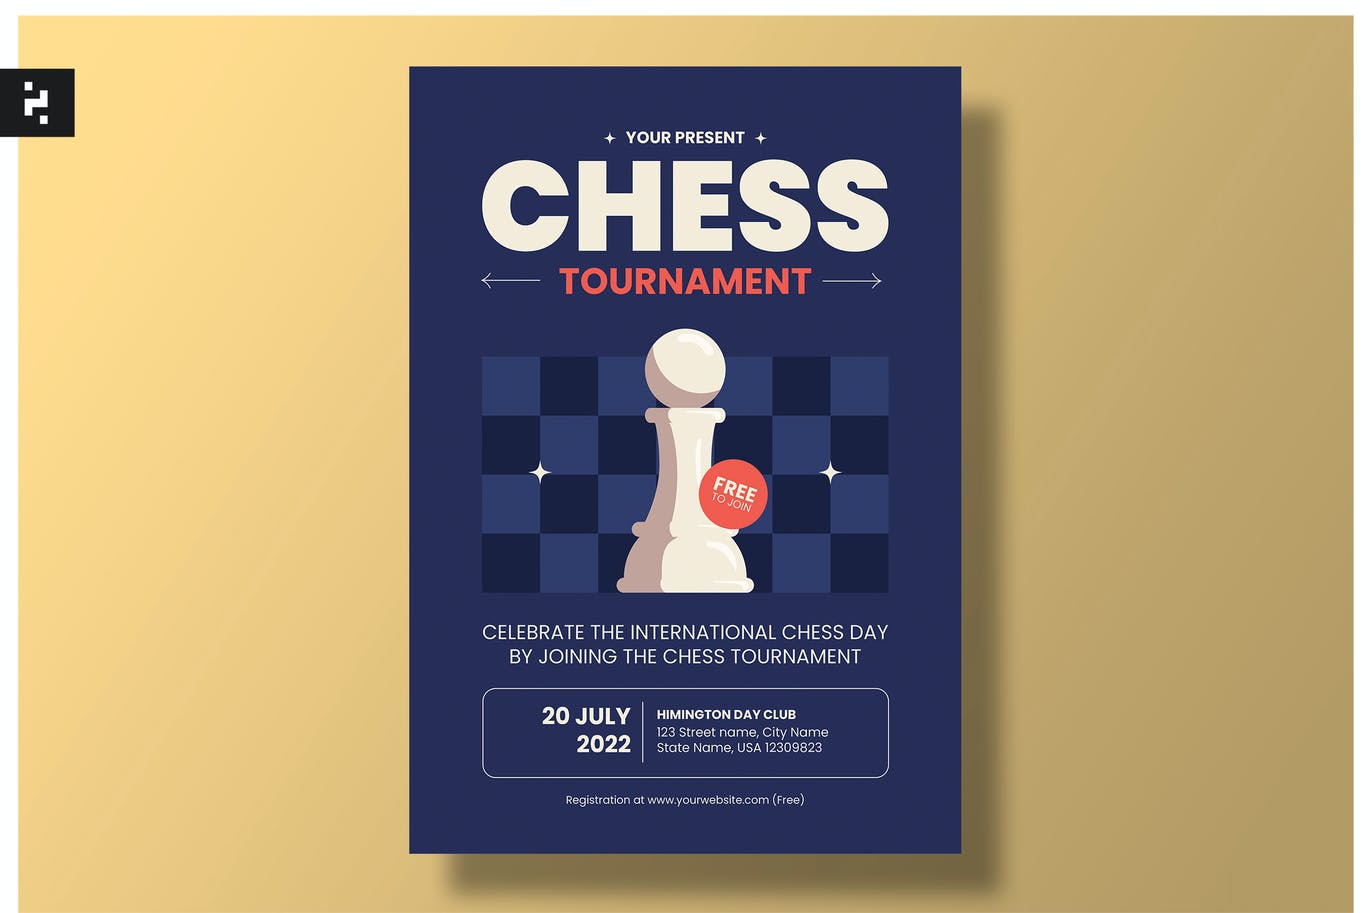 国际象棋比赛海报模板下载 Chess Tournament Flyer Template 设计素材 第1张